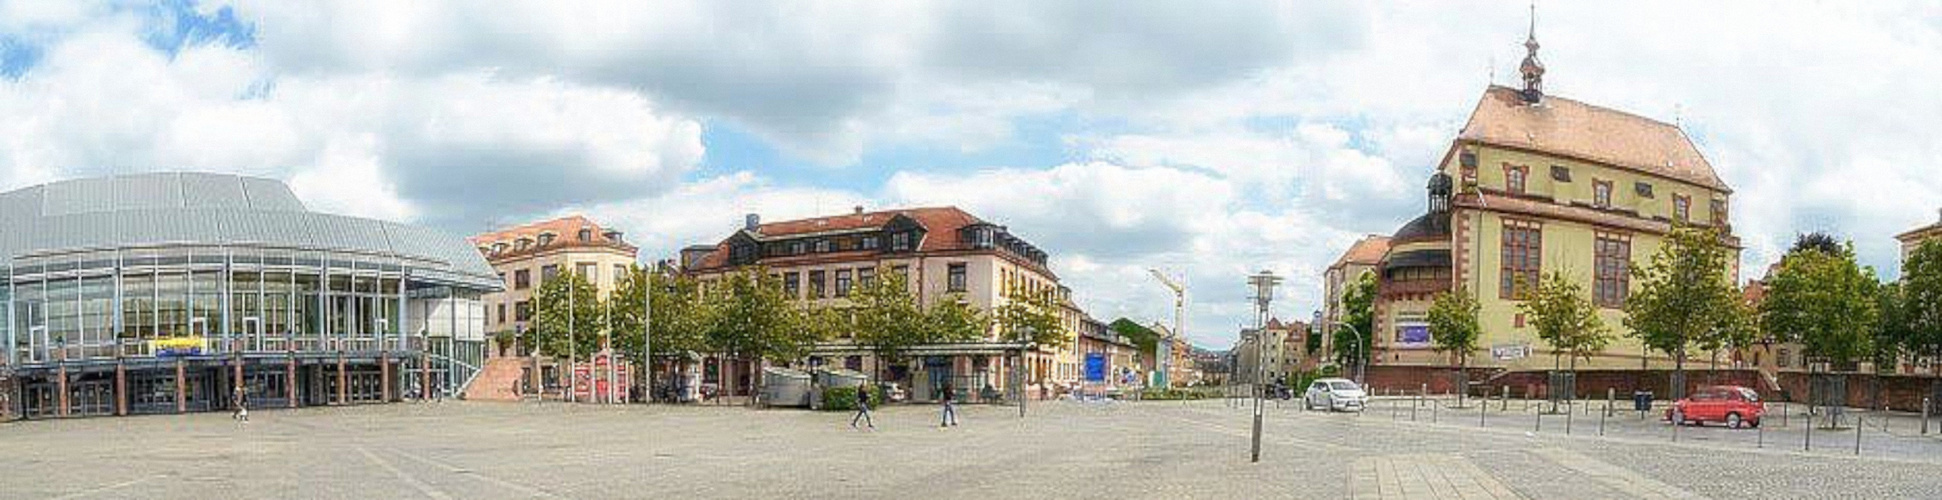 Panorama Aschaffenburg, Stadthalle, VHS,Jesuitenkirche